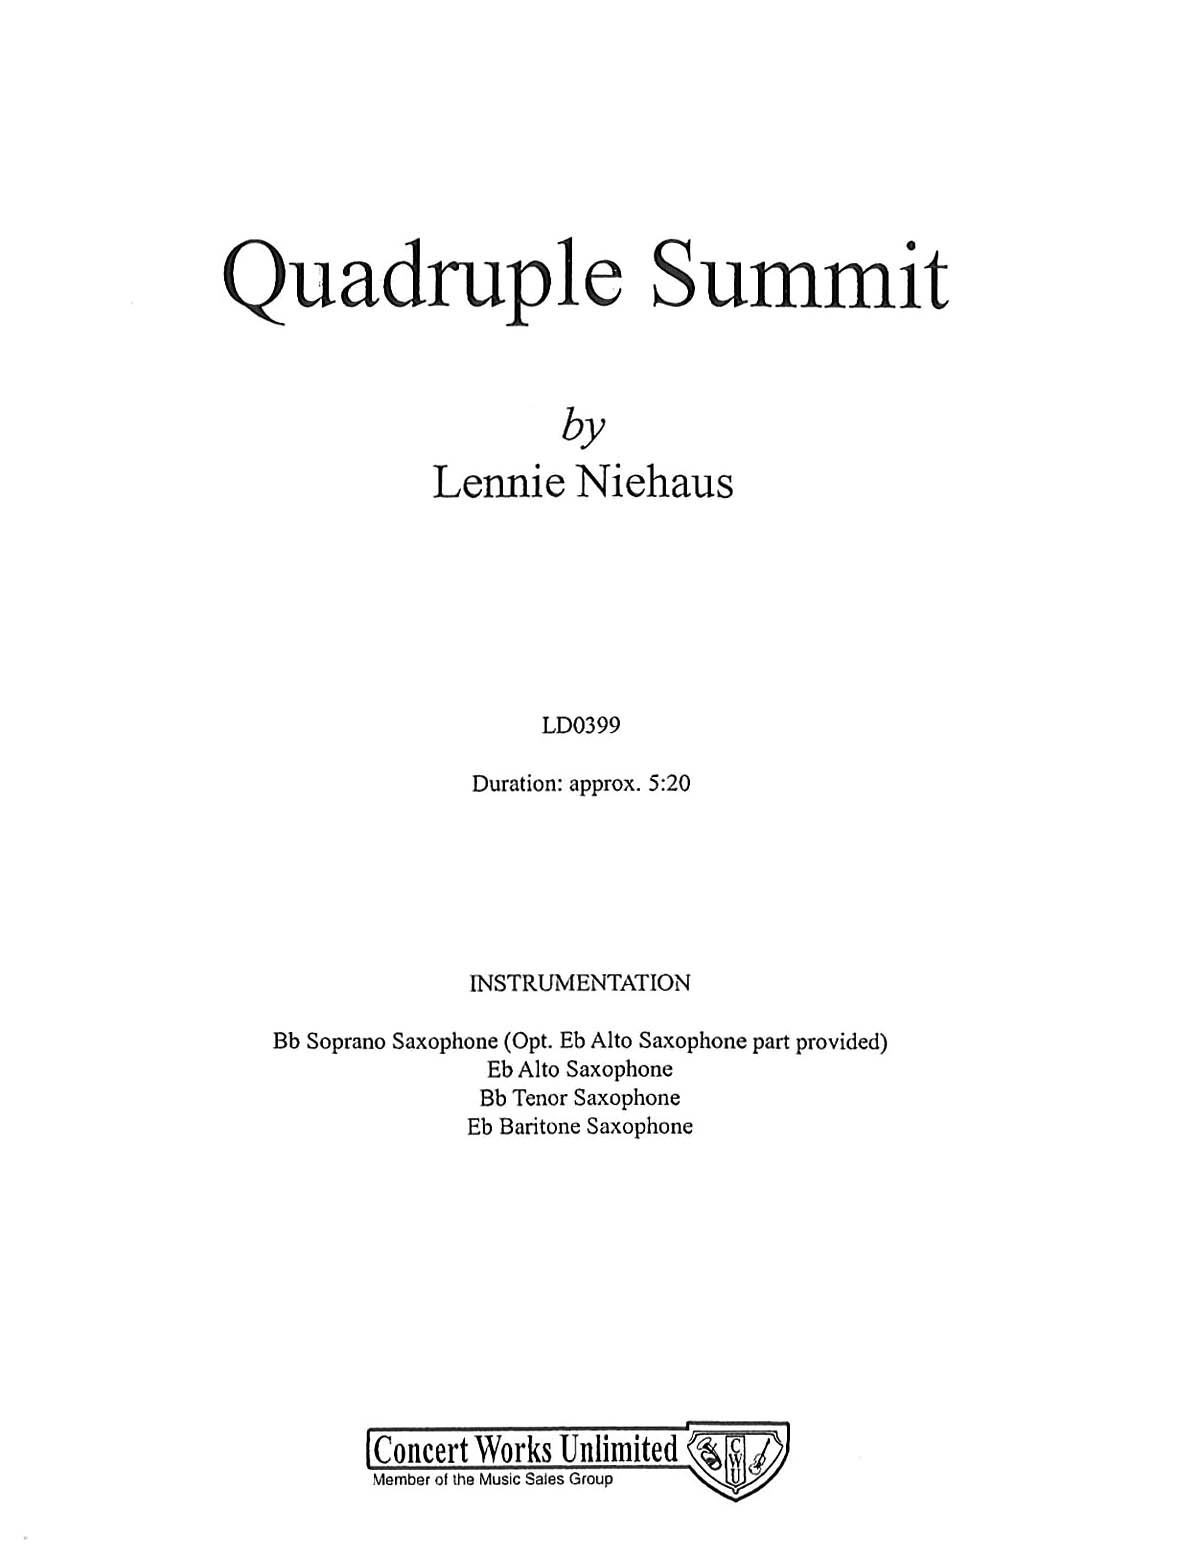 Quadruple Summit: Part